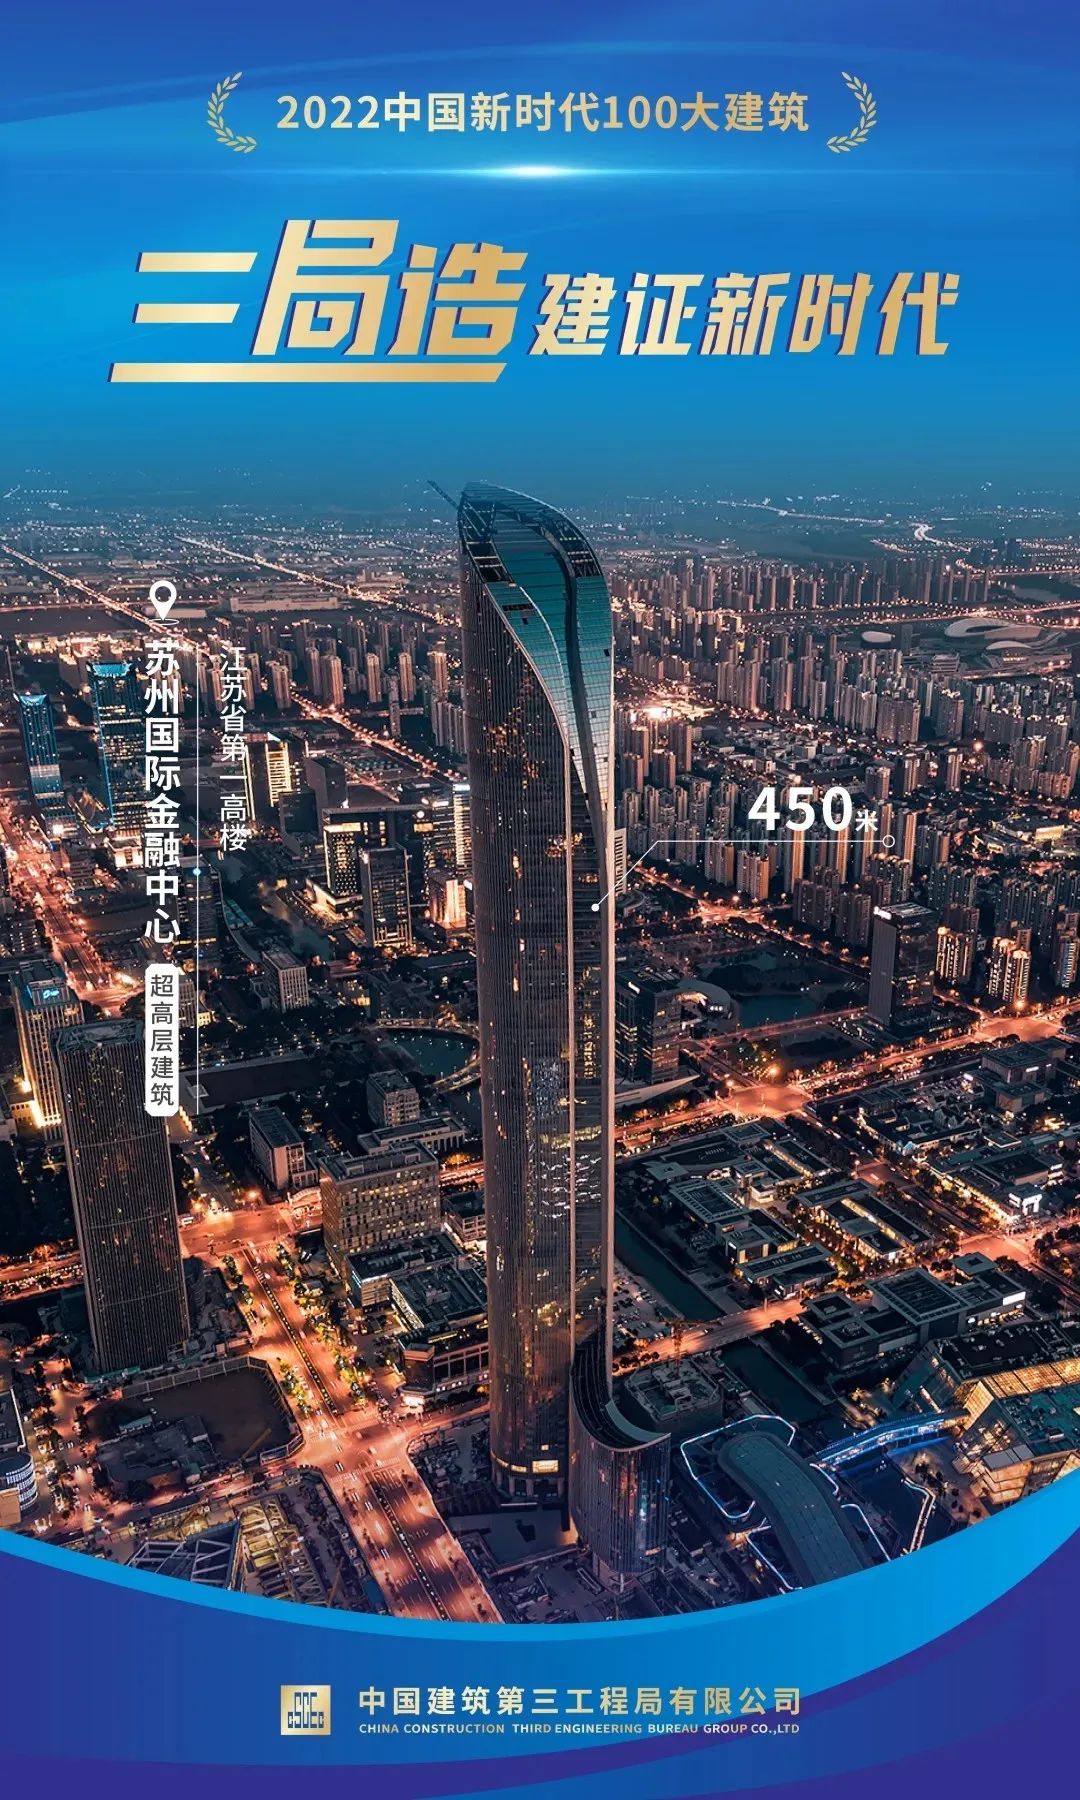 11.23 发布！中建三局三公司2项工程入选 “2022中国新时代100大建筑”！1.jpg